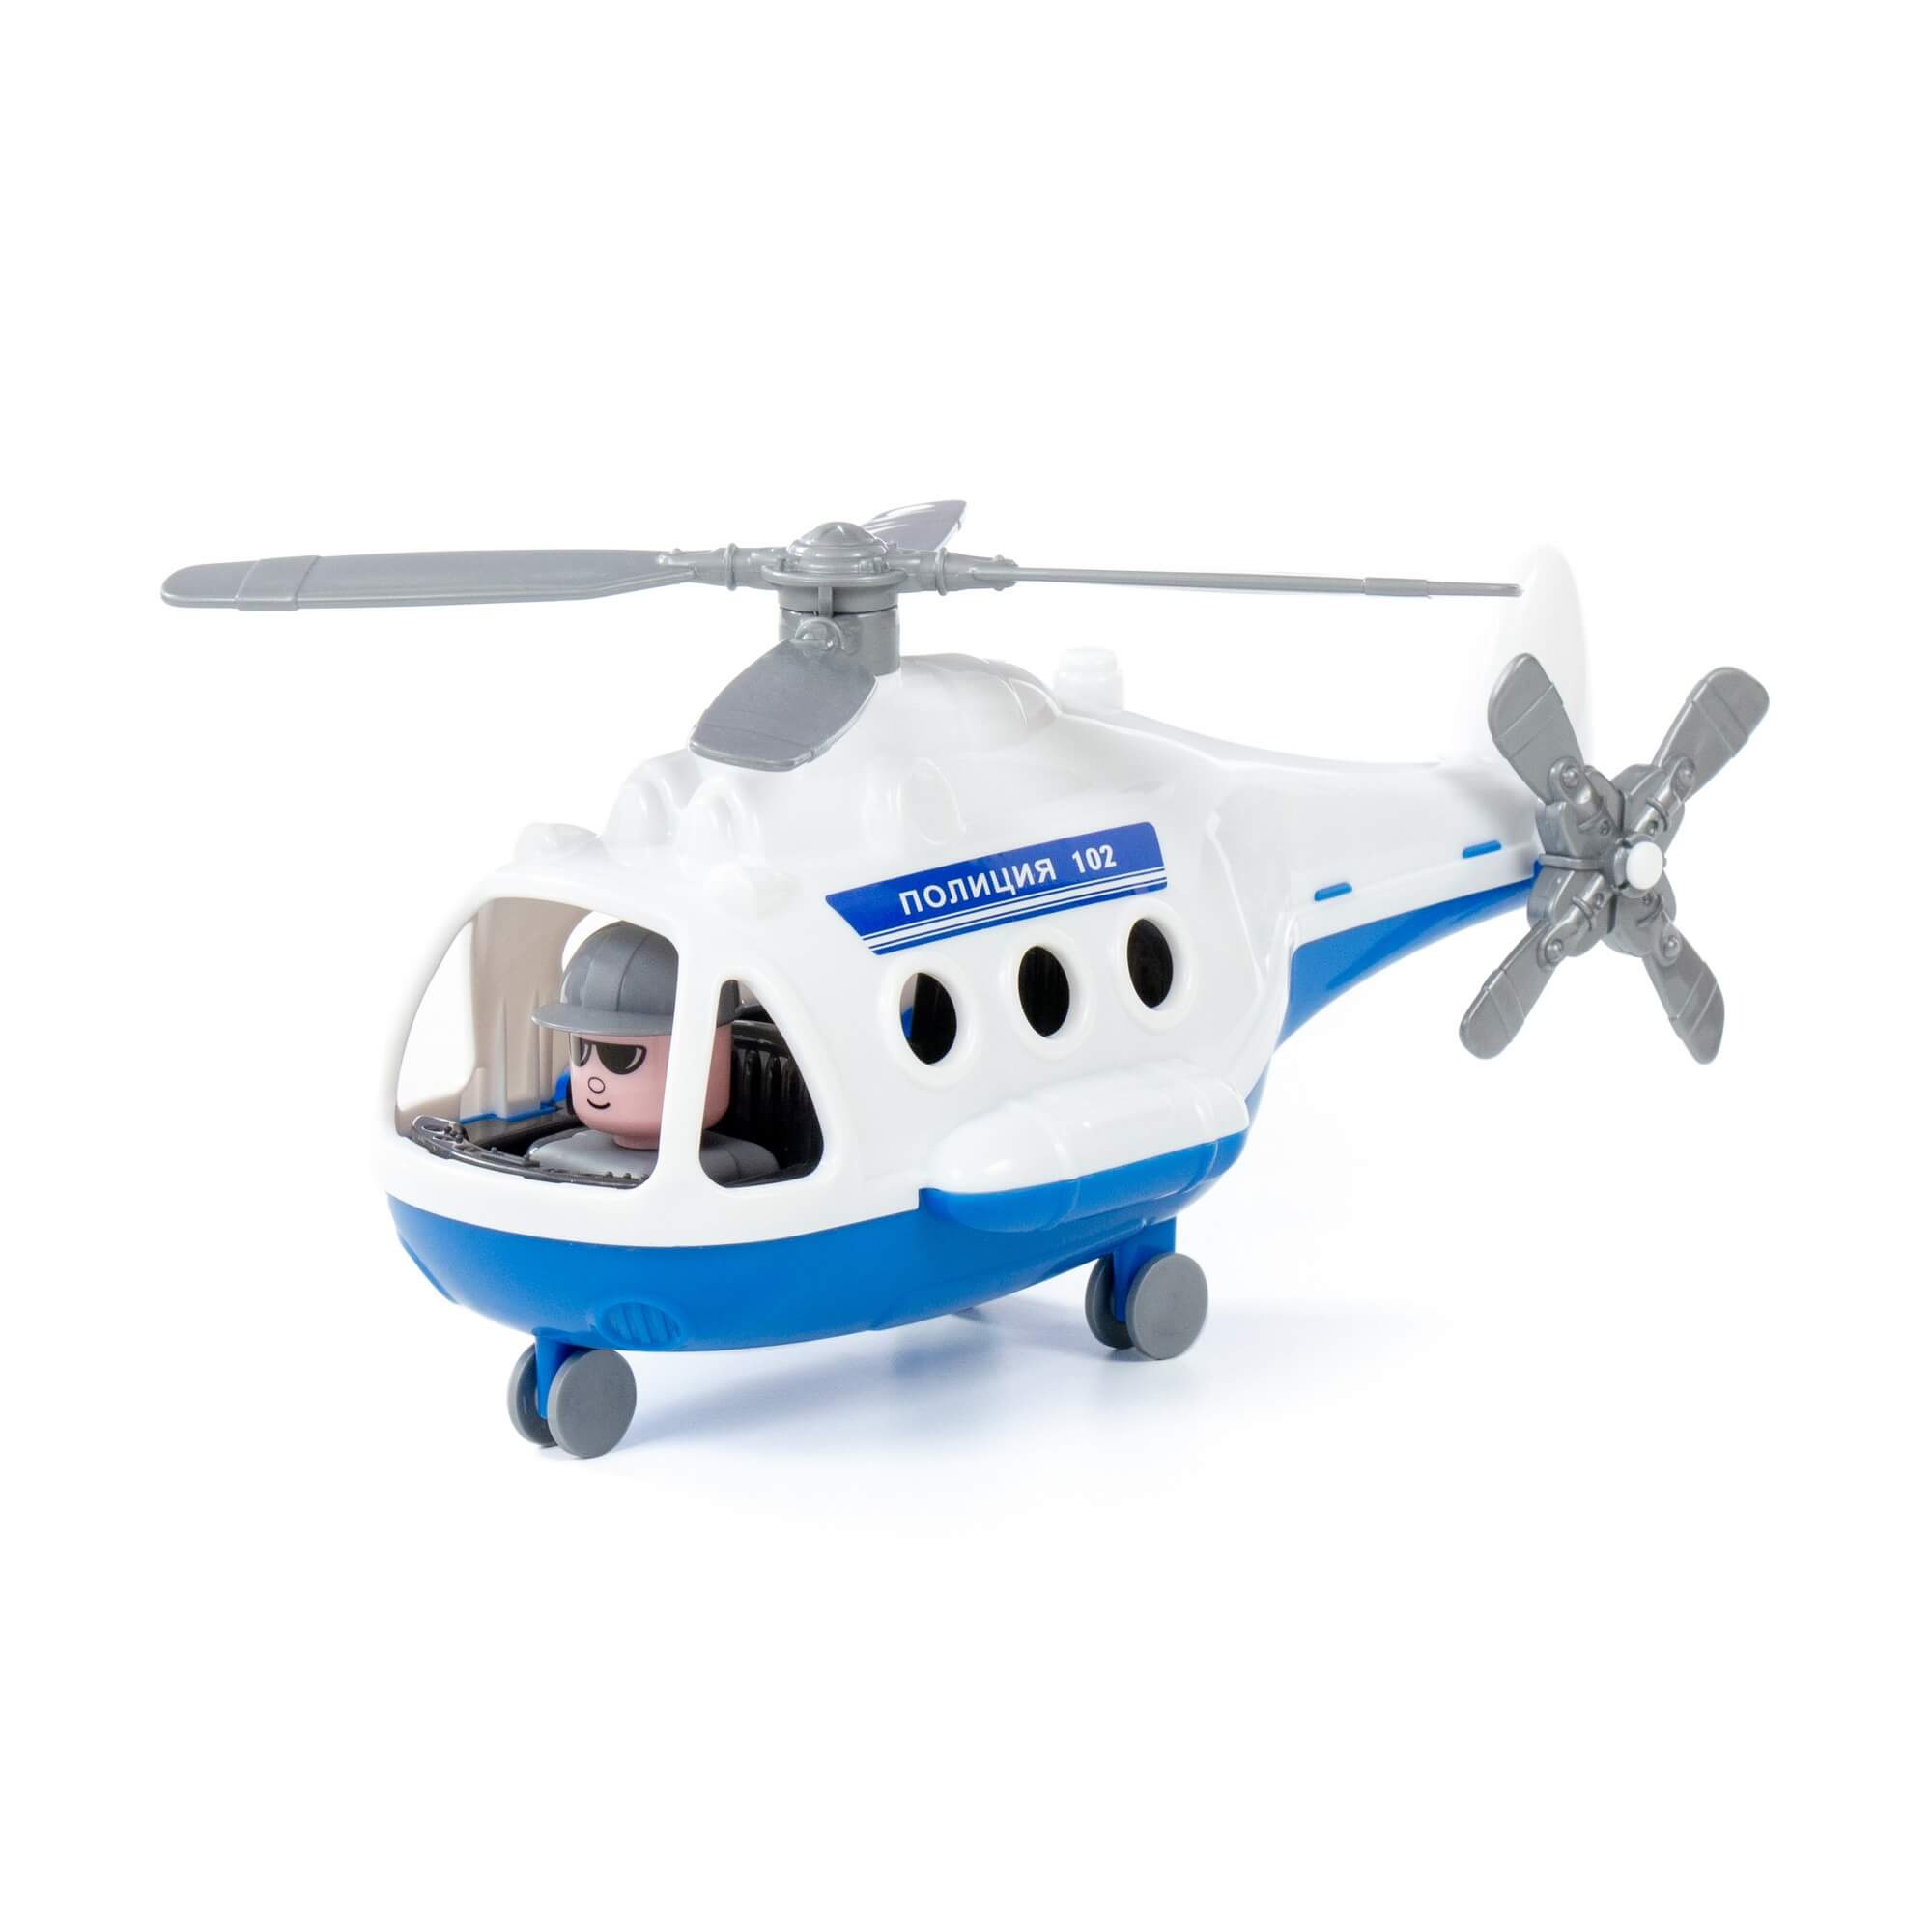 Máy bay trực thăng cảnh sát Alpha đồ chơi - Polesie Toys